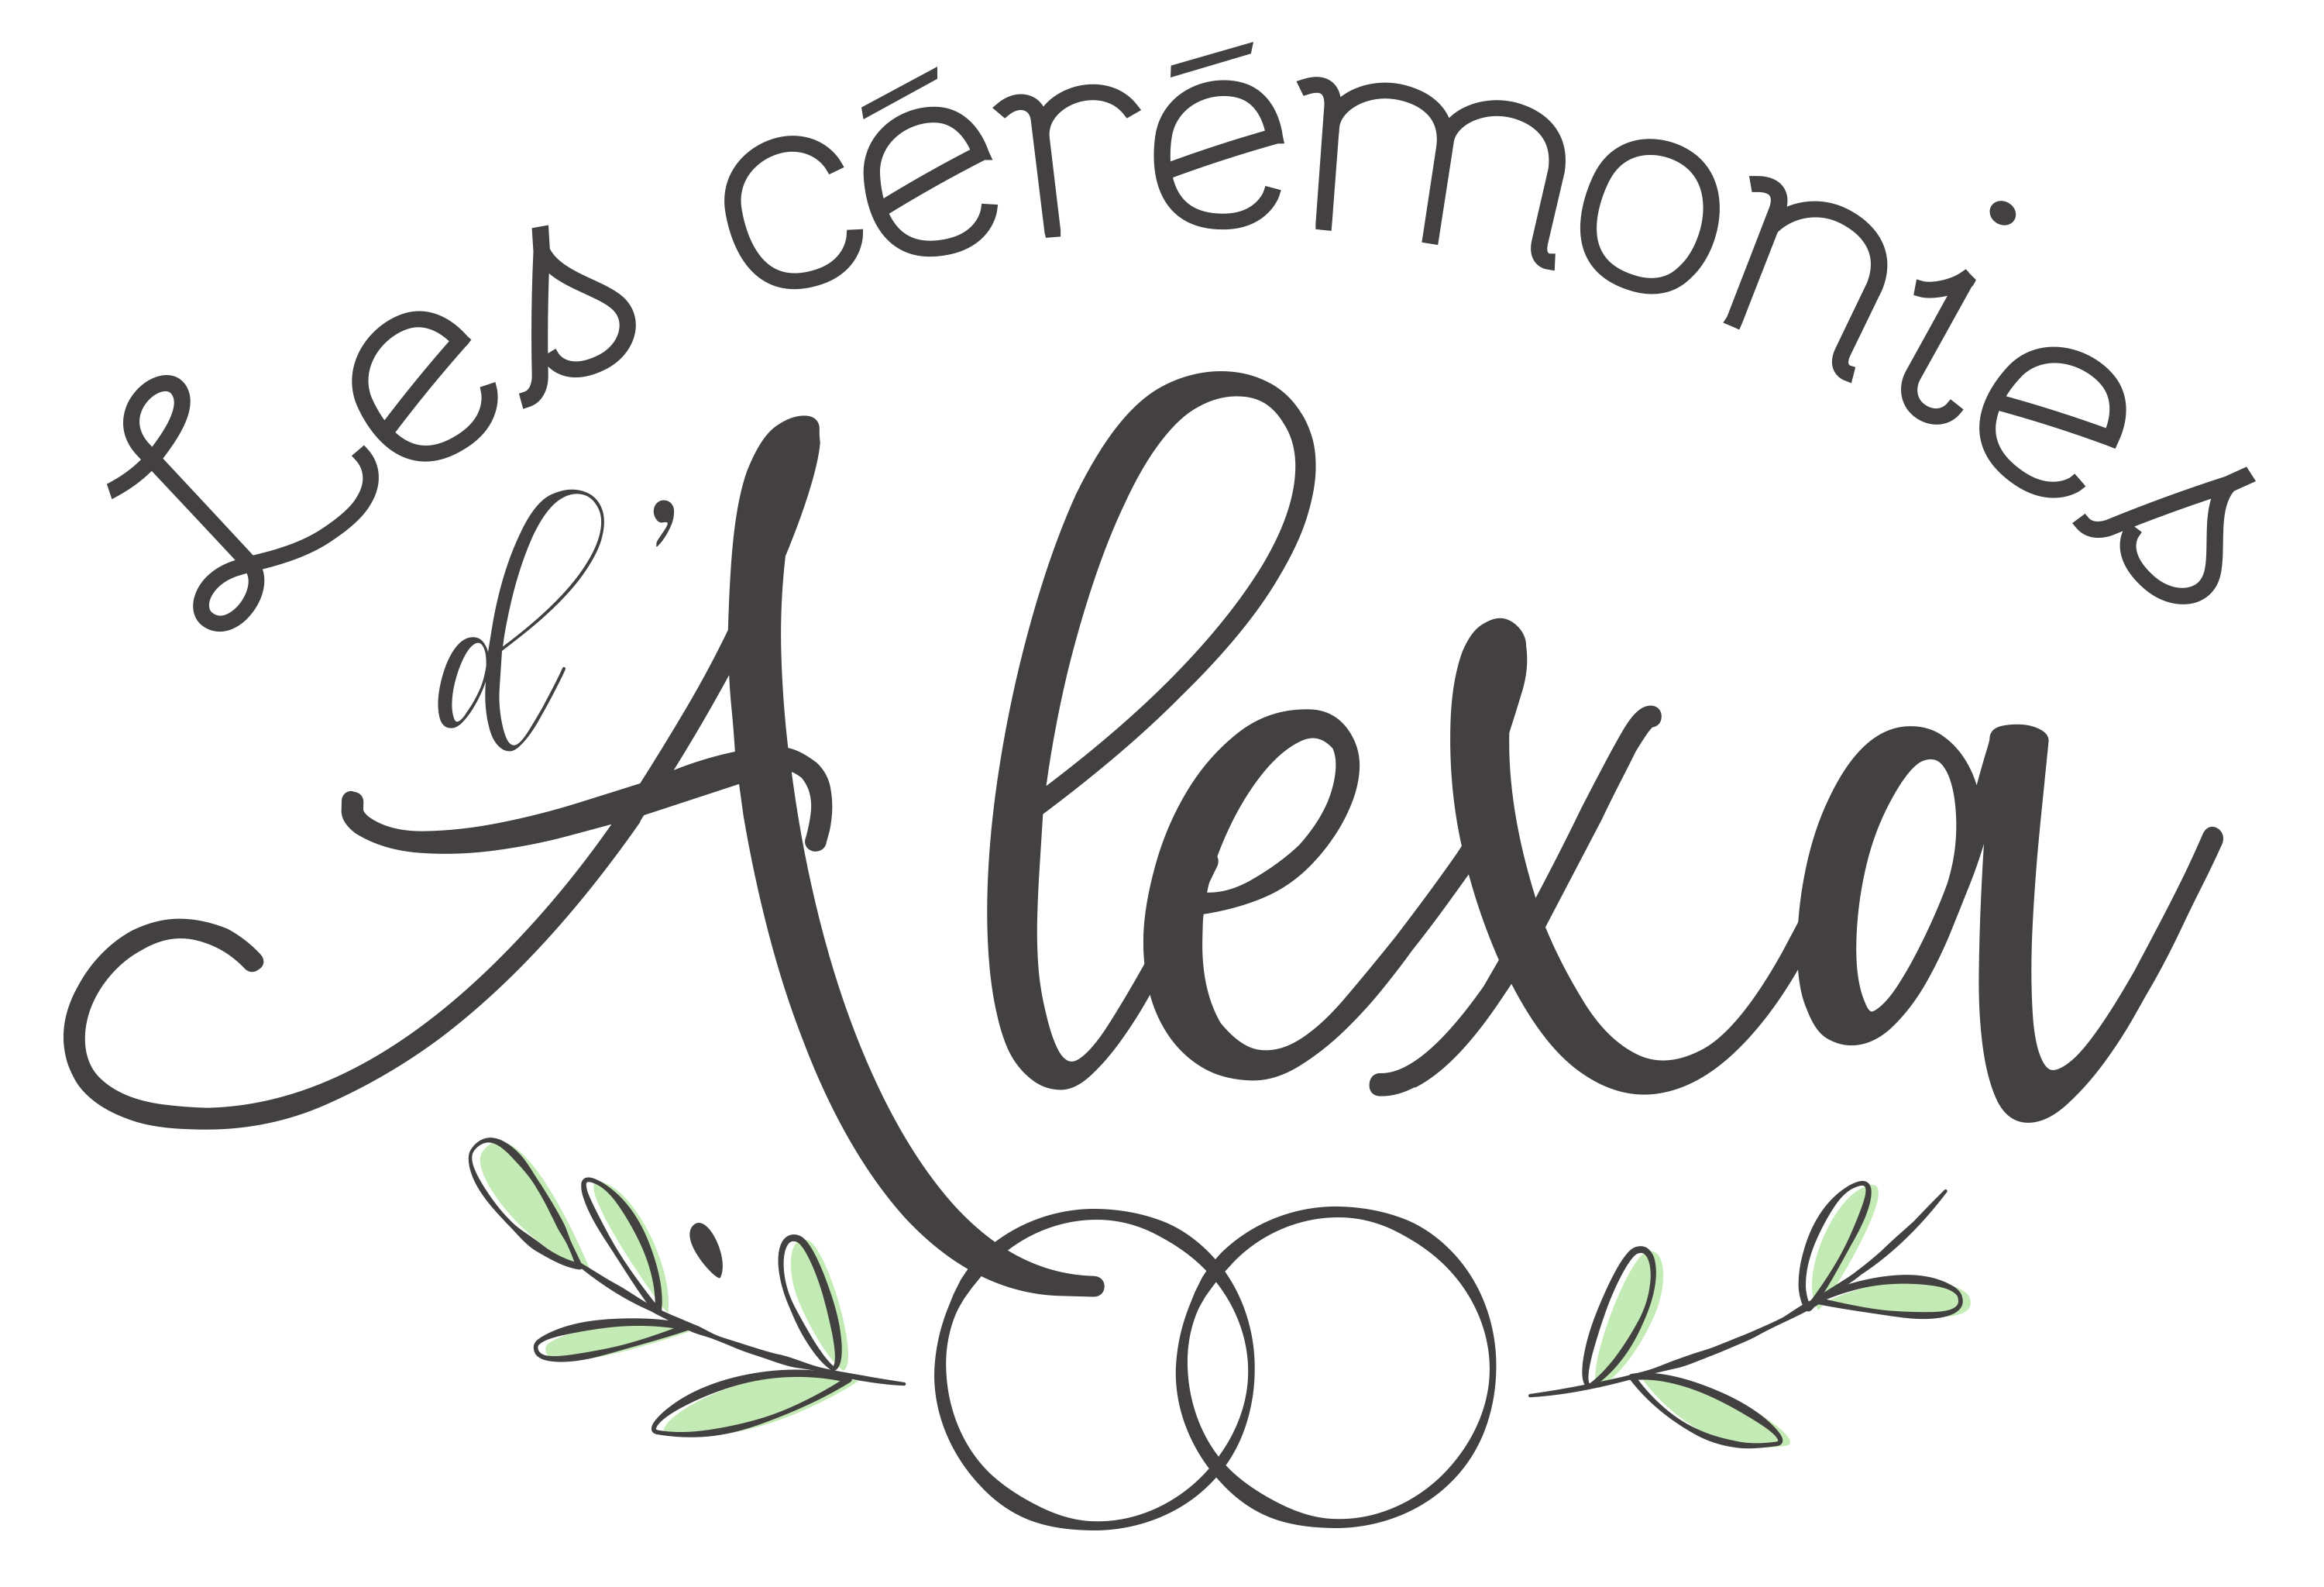 lles-ceremonies-dalexa-ceremonie-laique-france-alexa-organiser-ma-ceremonie-laique